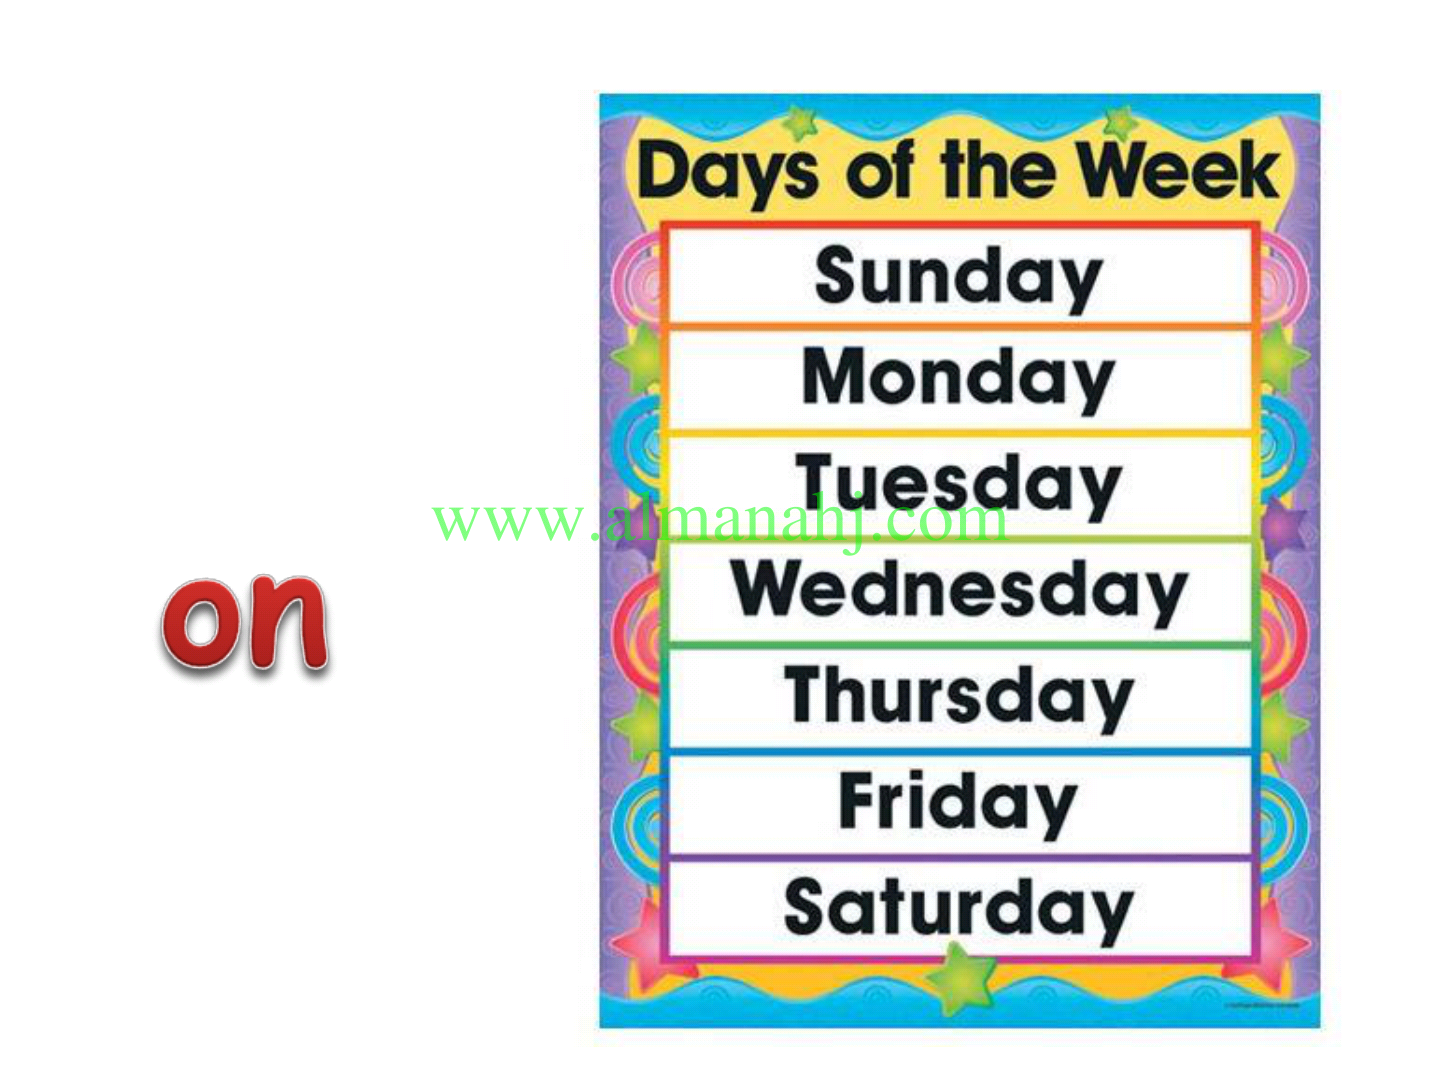 Days of the week for kids song. Недели на английском. Закладка дни недели на английском. Название дней недели на английском. Карточки с днями недели на английском.